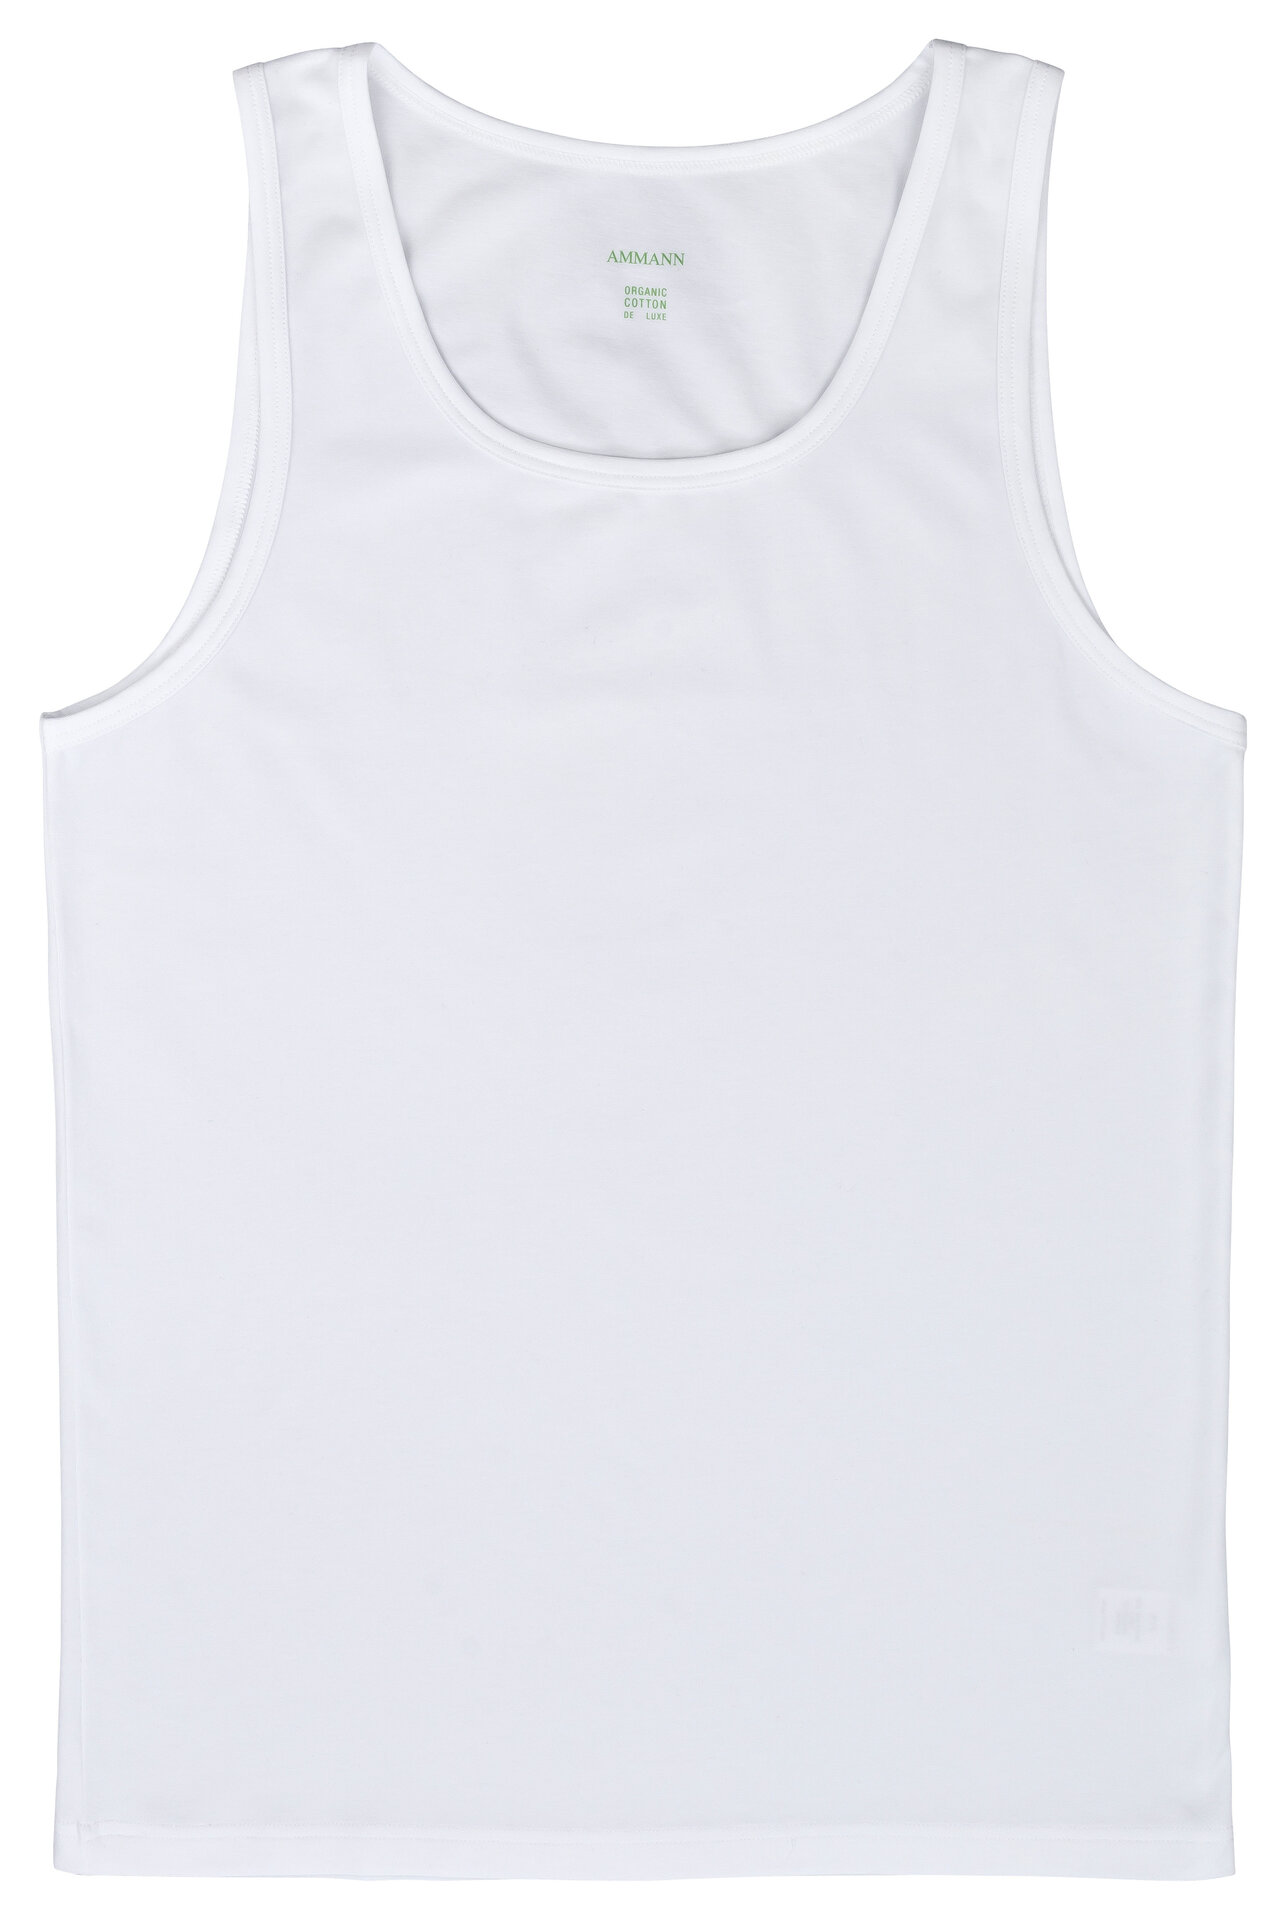 Ammann Organic de Luxe Herren Athletic-Shirt